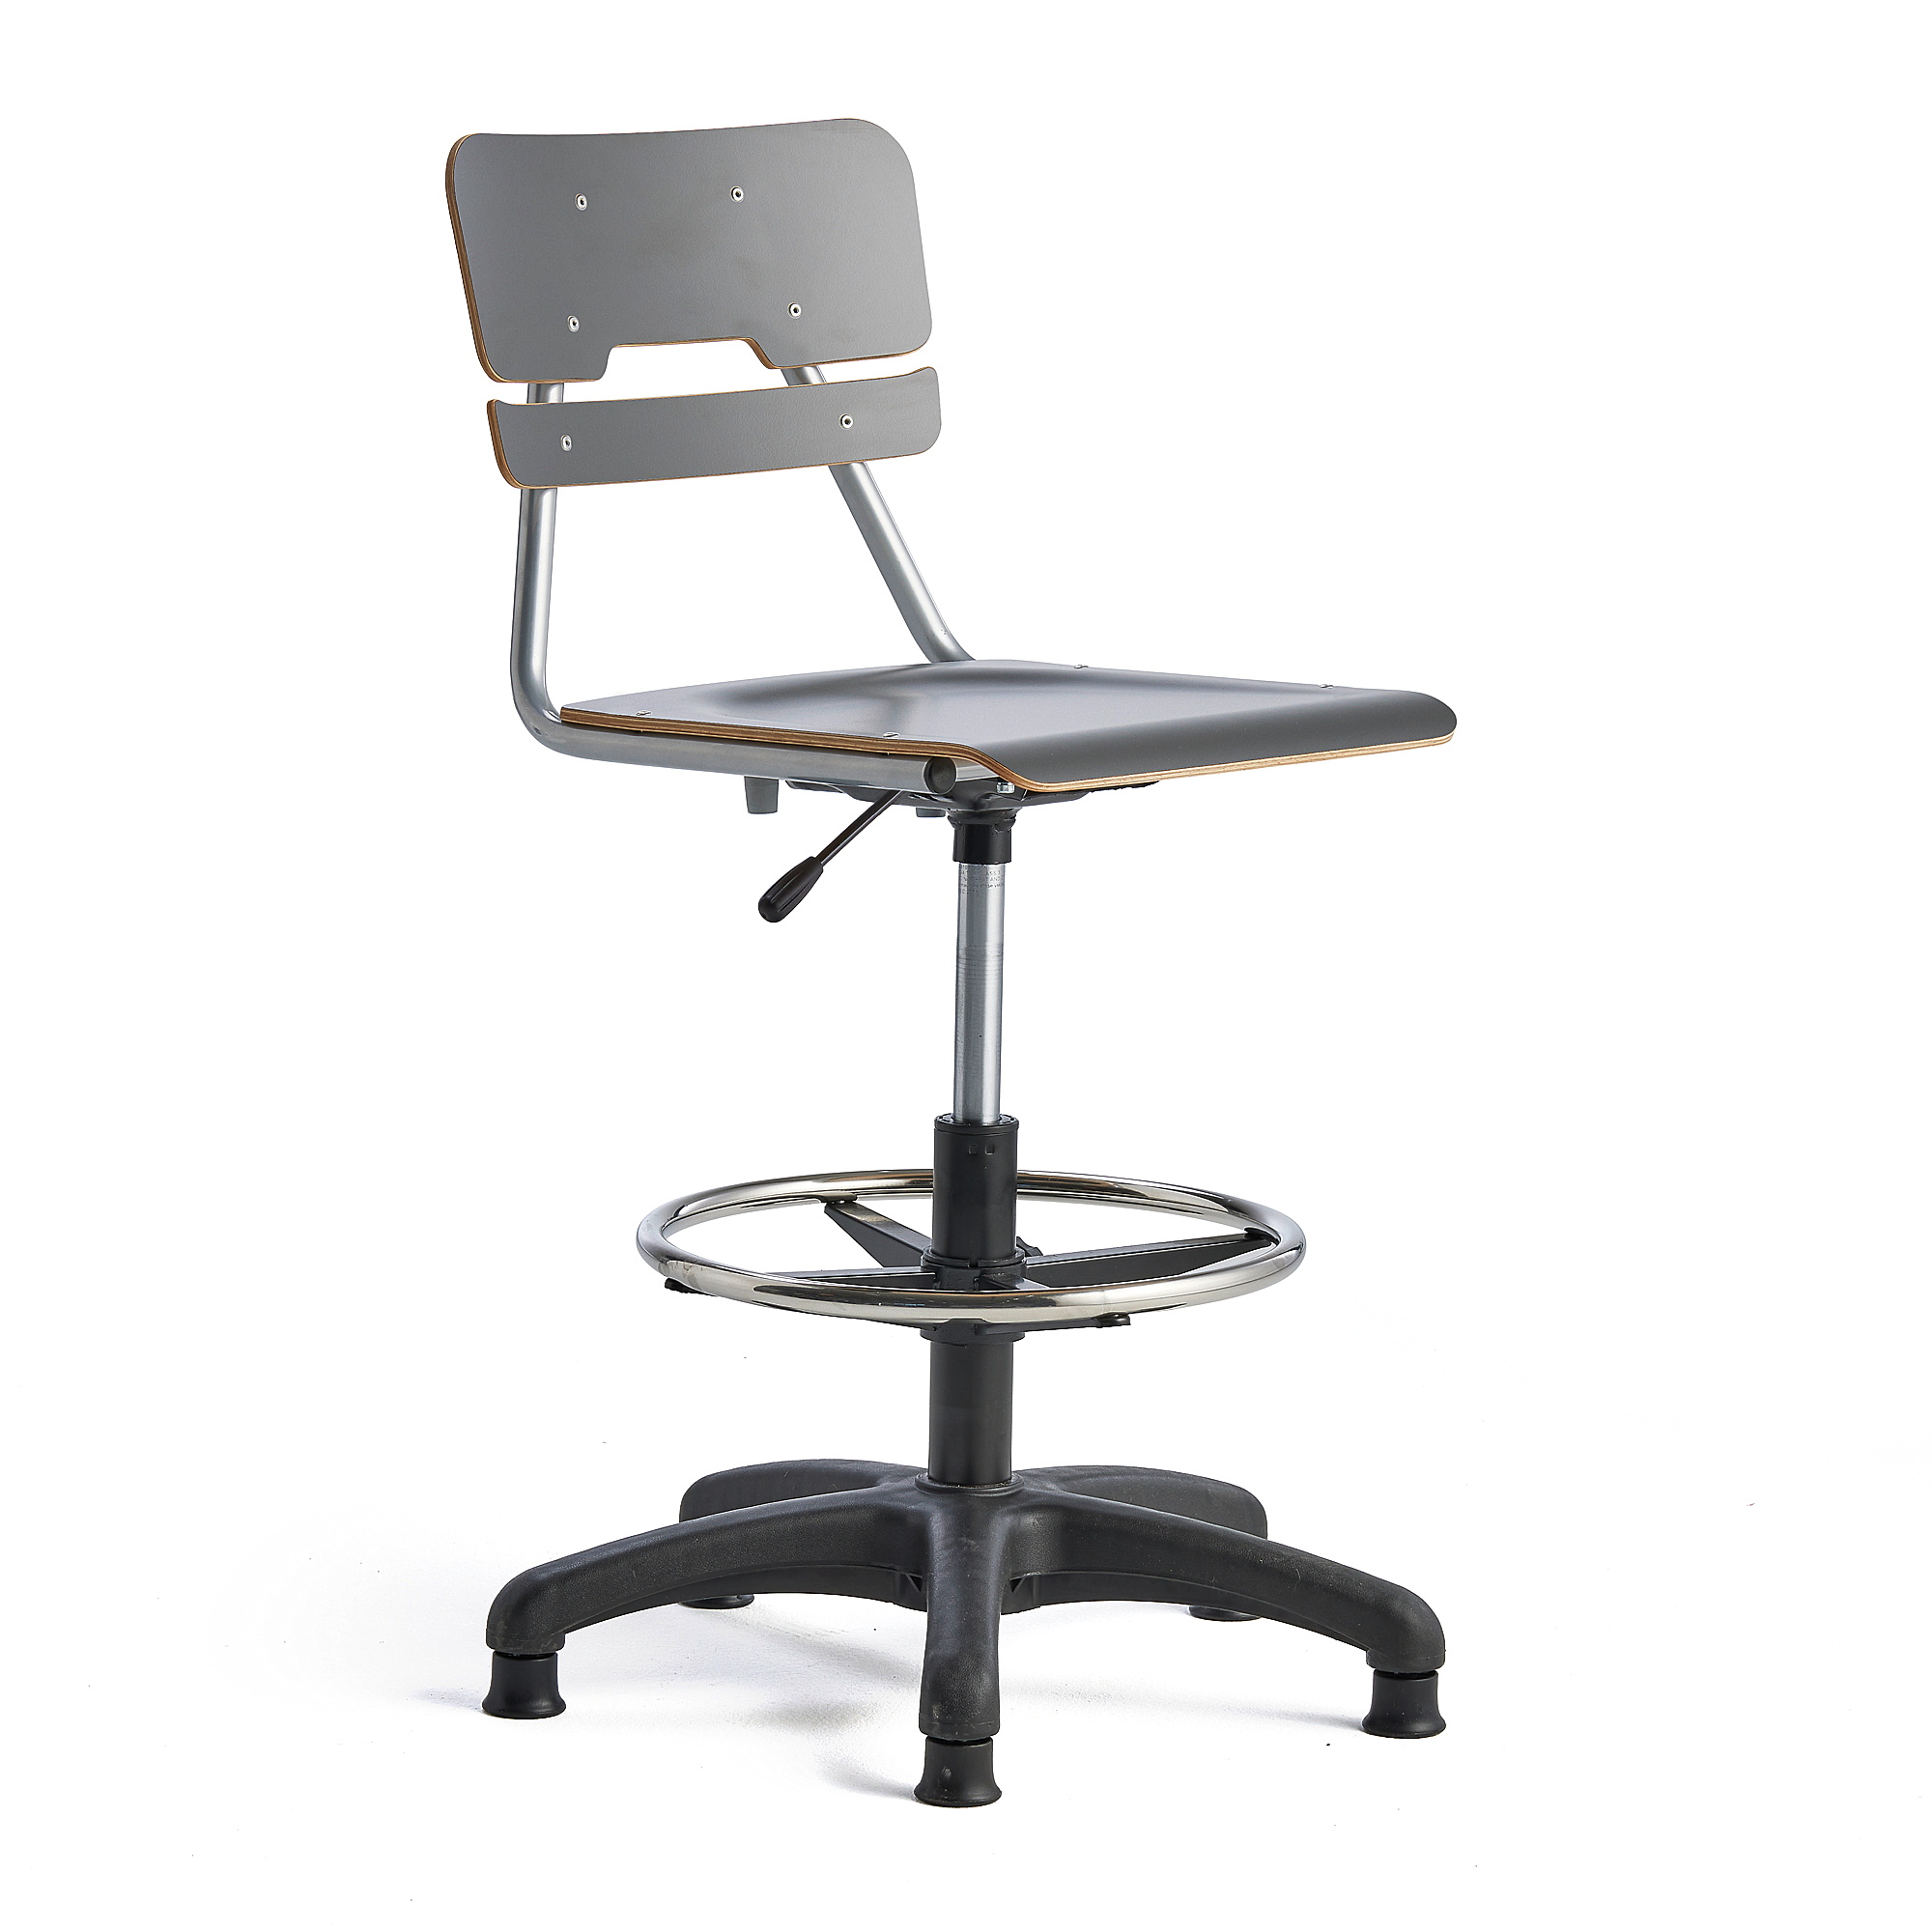 Otočná židle LEGERE, velký sedák, s kluzáky, nastavitelná výška 500-690 mm, antracitově šedá